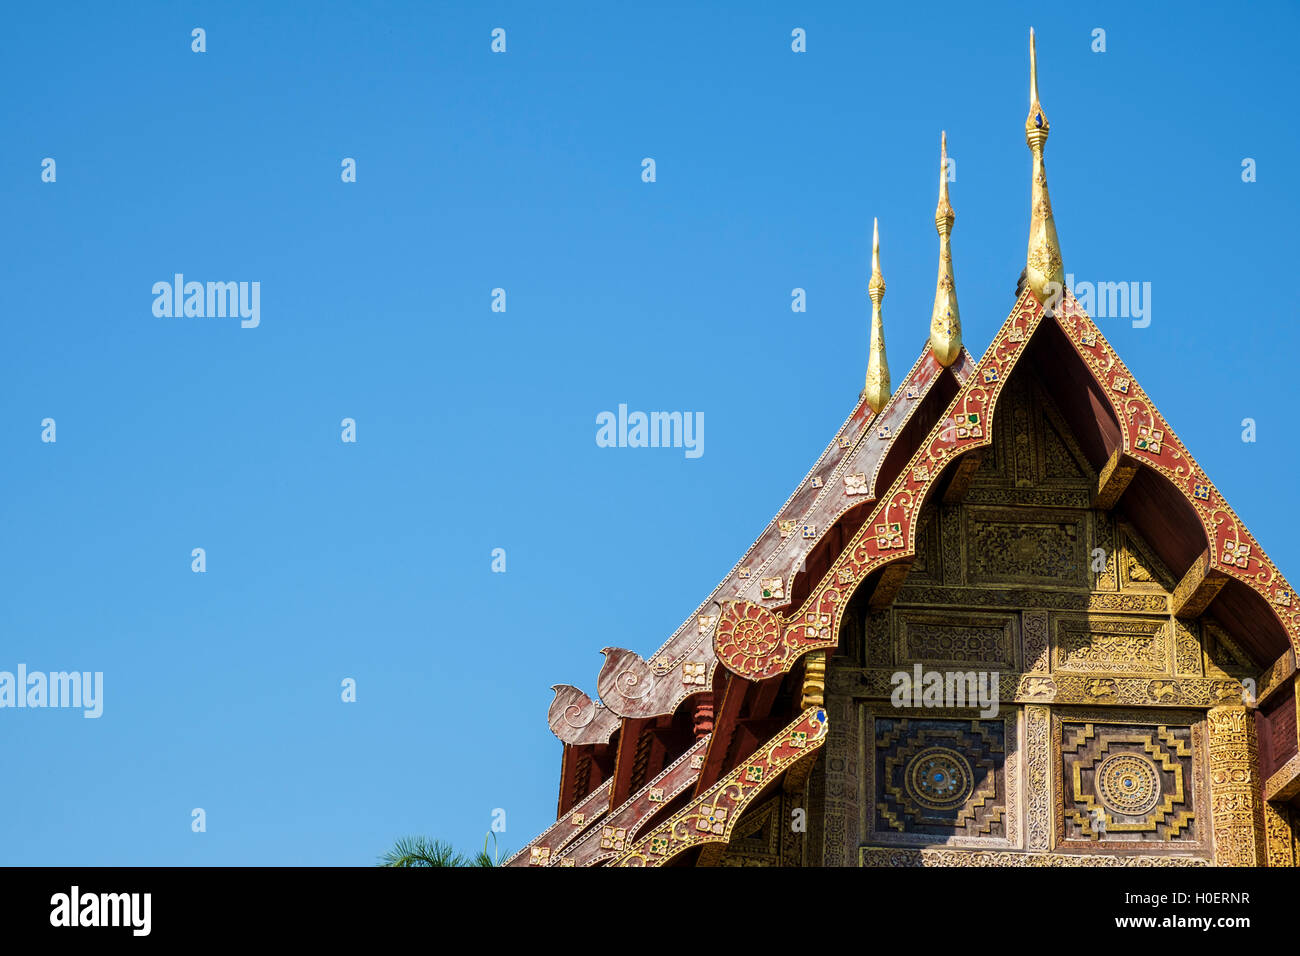 Lanna-Stil dreistufigen Dach mit Chofa und geschnitzten hölzernen Giebel des Wat Phra Sing, Chiang Mai, Provinz Chiang Mai, Thailand. Stockfoto